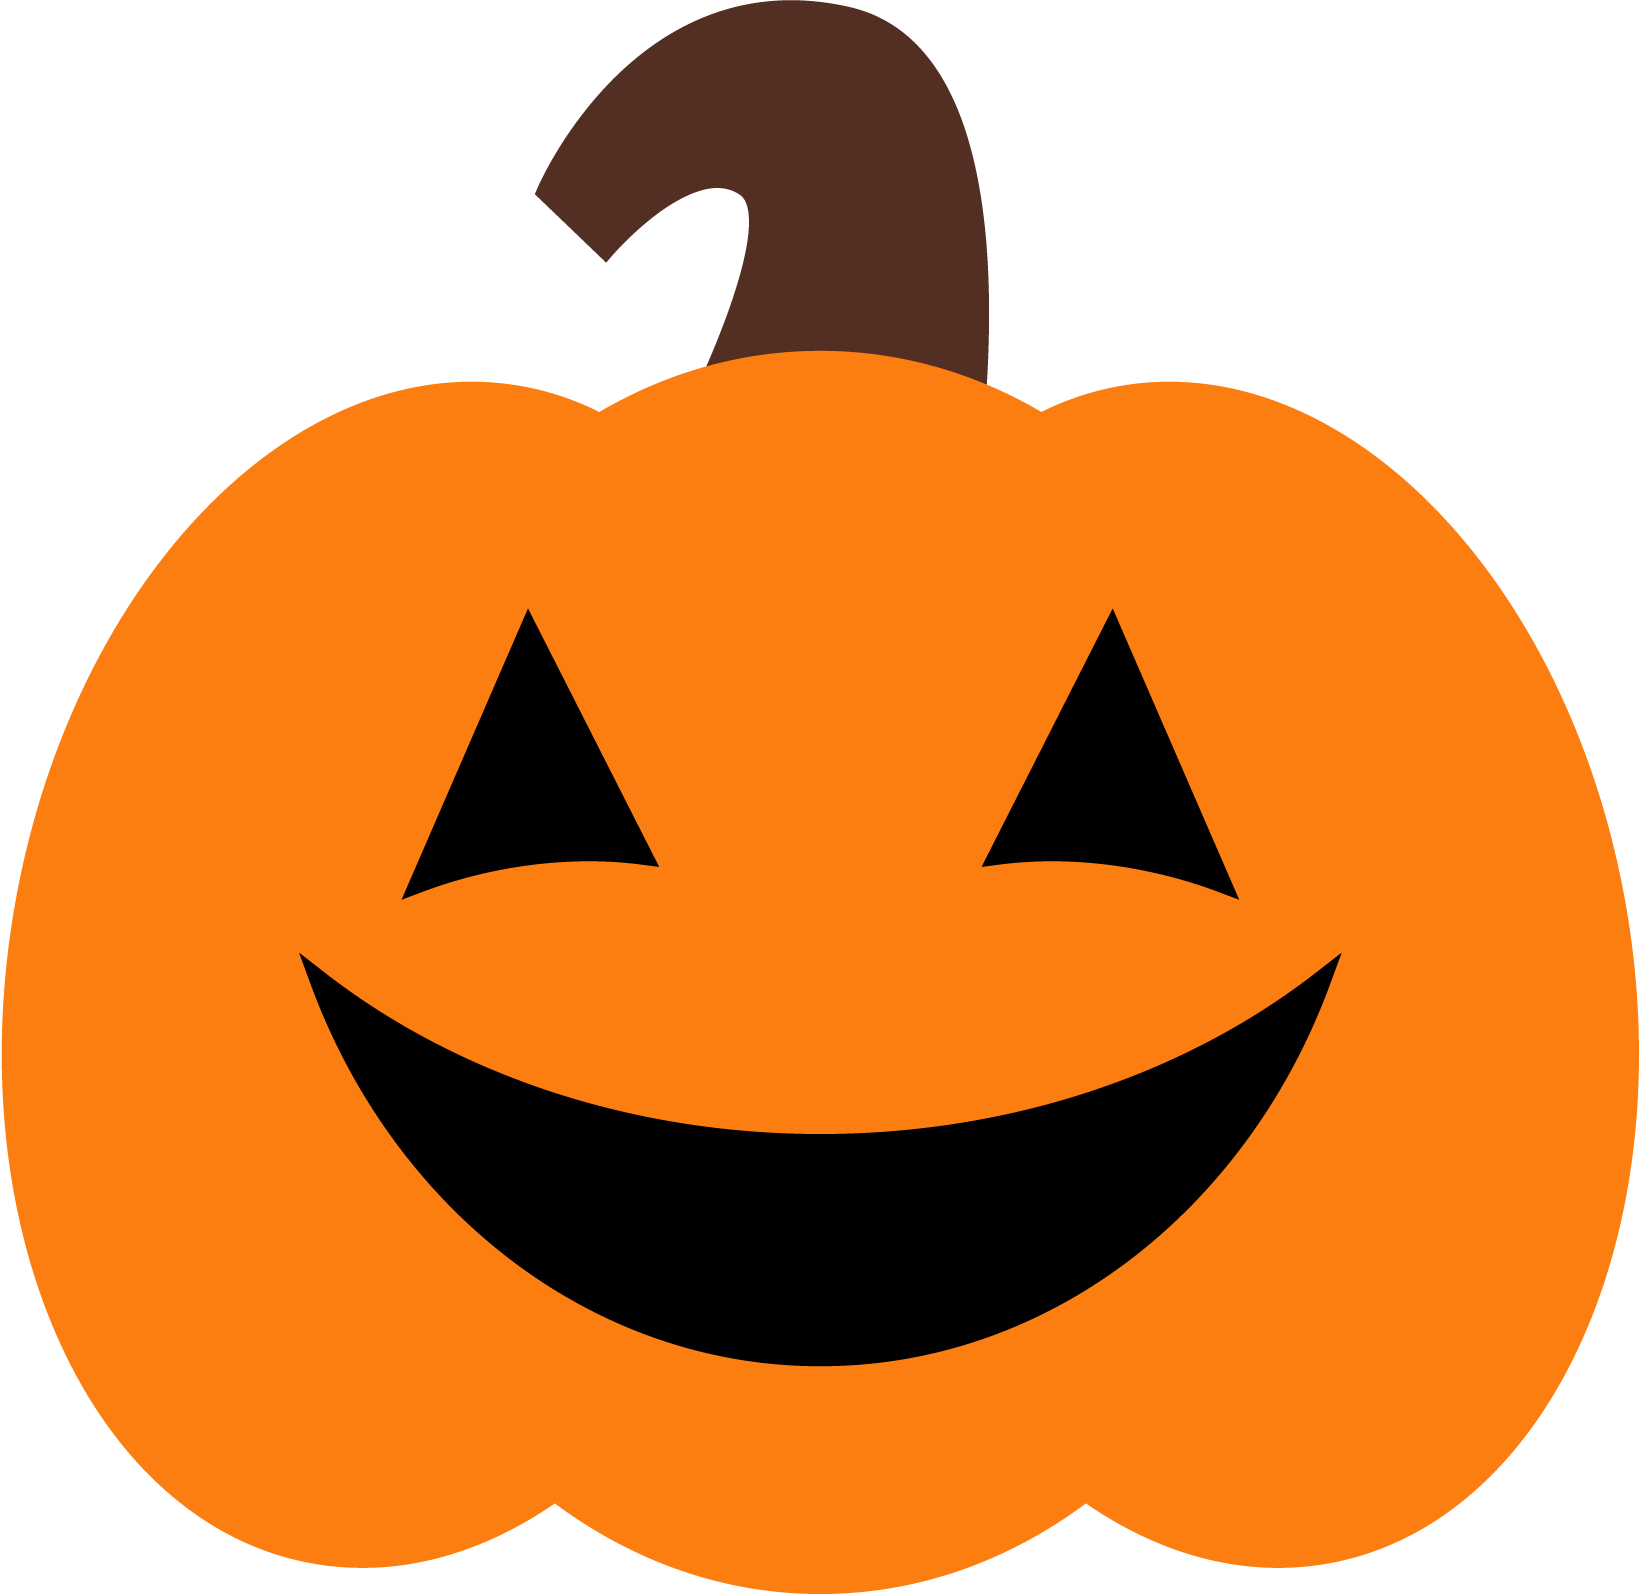 Halloween Pumpkin Clip Art - Halloween Pumpkin Clipart